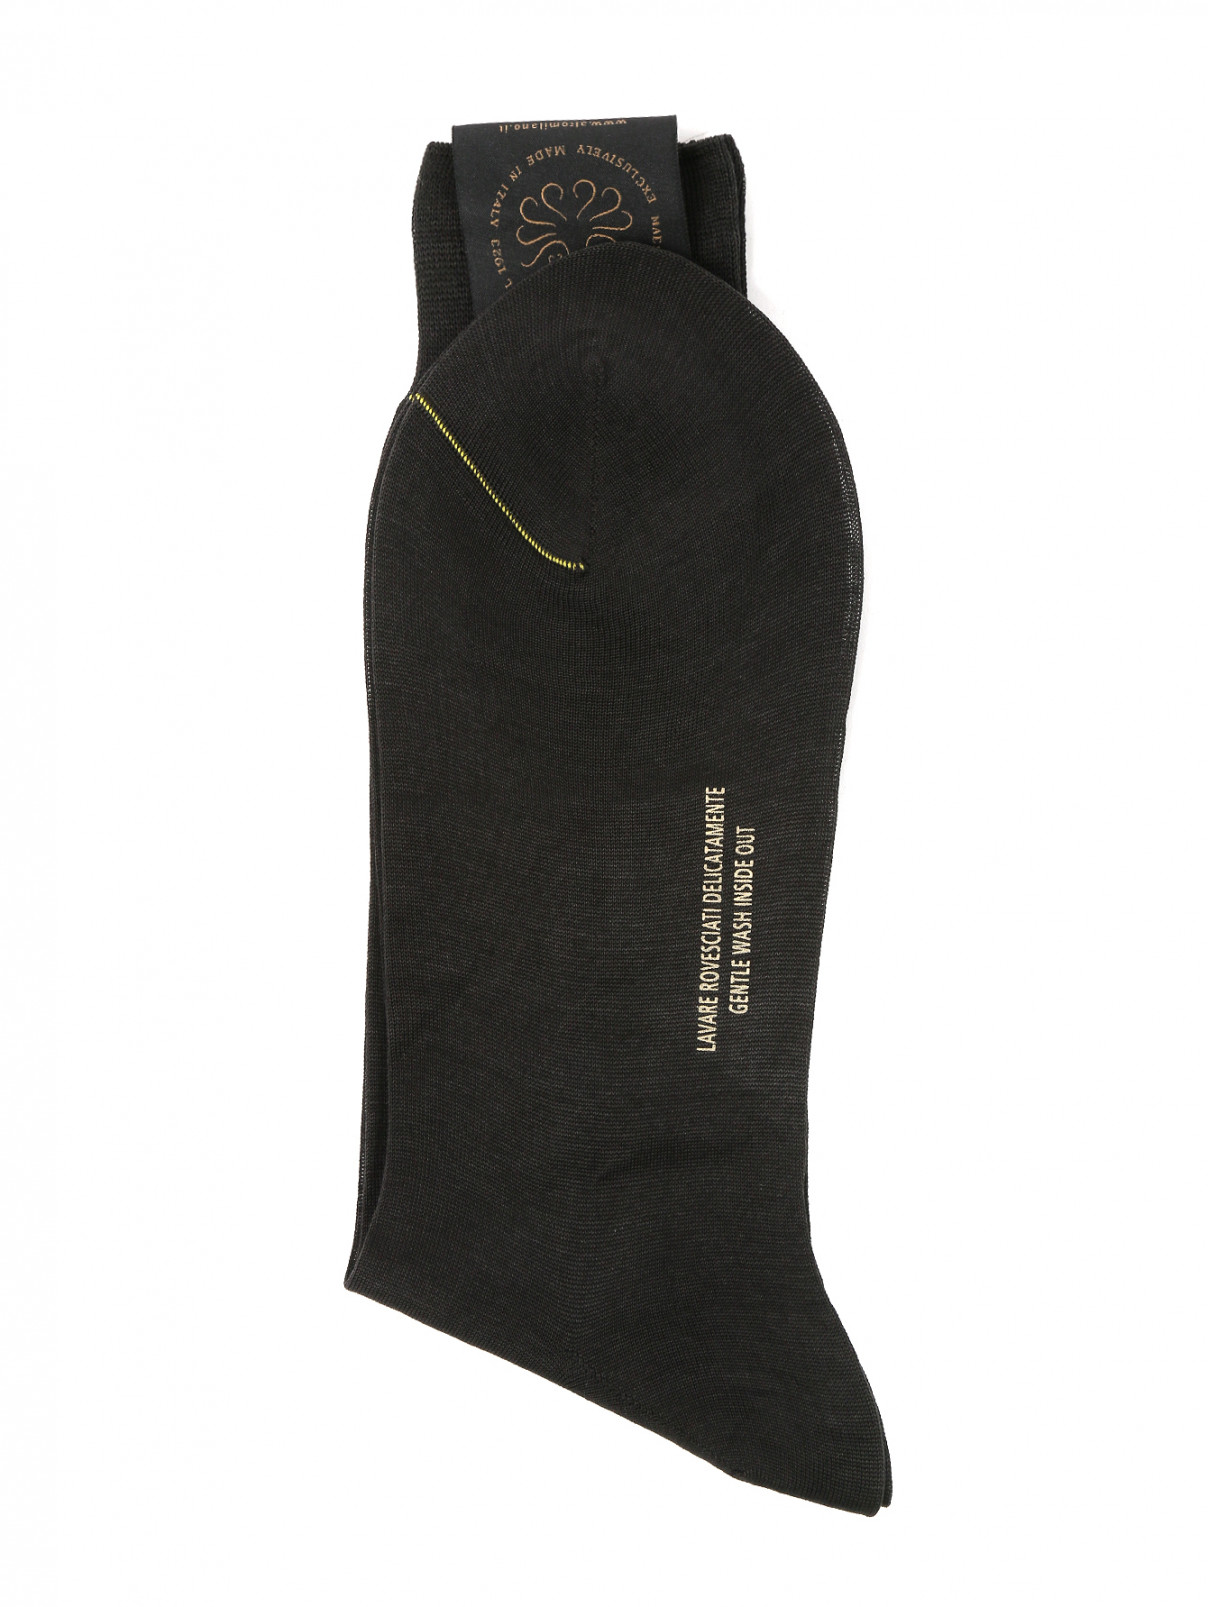 Носки из хлопка Peekaboo  –  Общий вид  – Цвет:  Черный